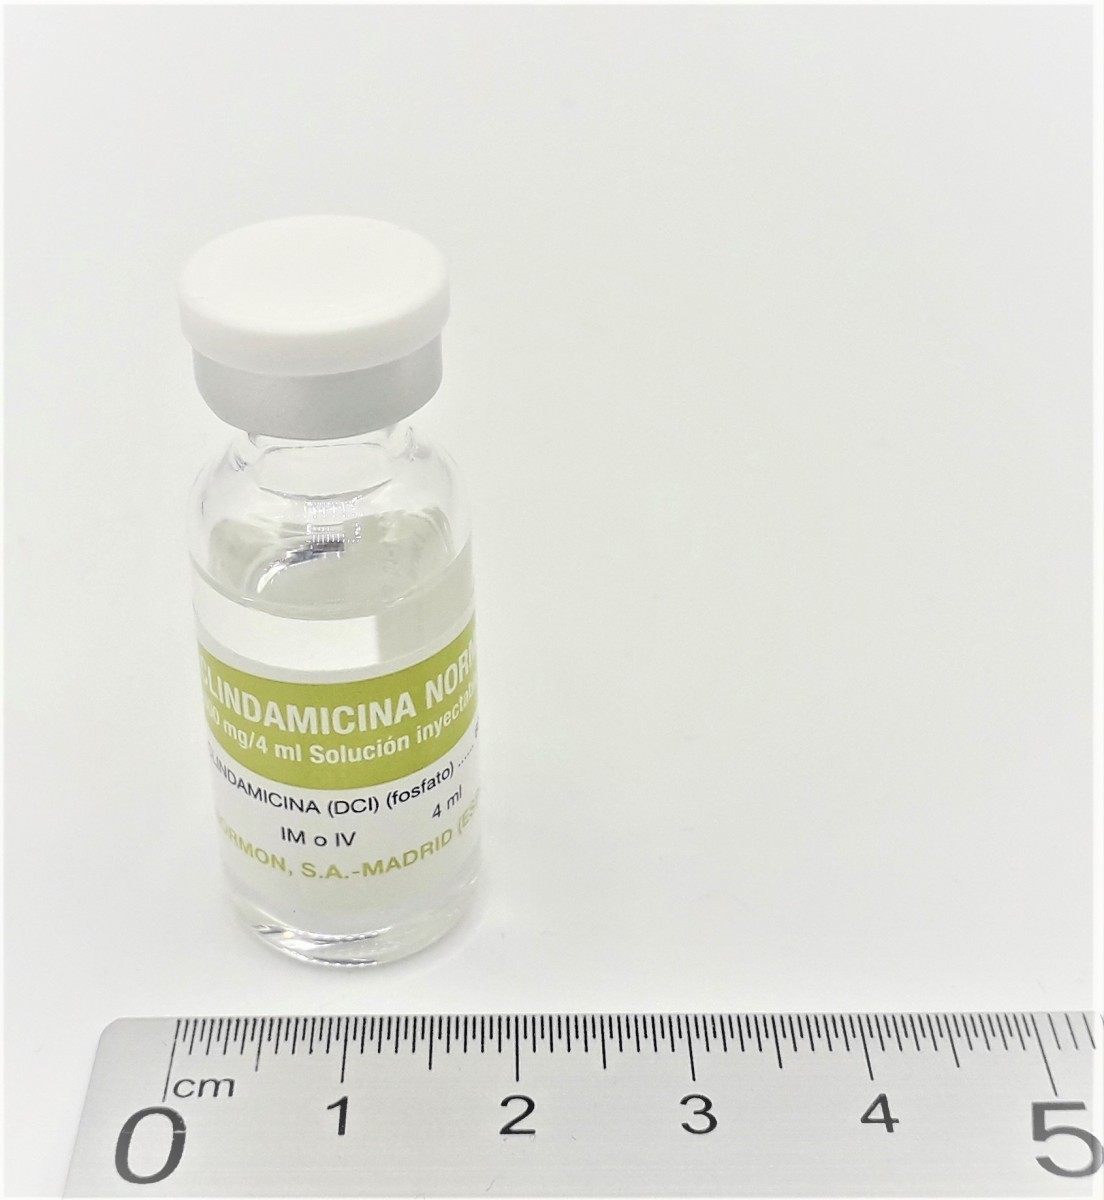 CLINDAMICINA NORMON 600 mg/4 ml SOLUCION INYECTABLE EFG , 1 vial de 4 ml fotografía de la forma farmacéutica.